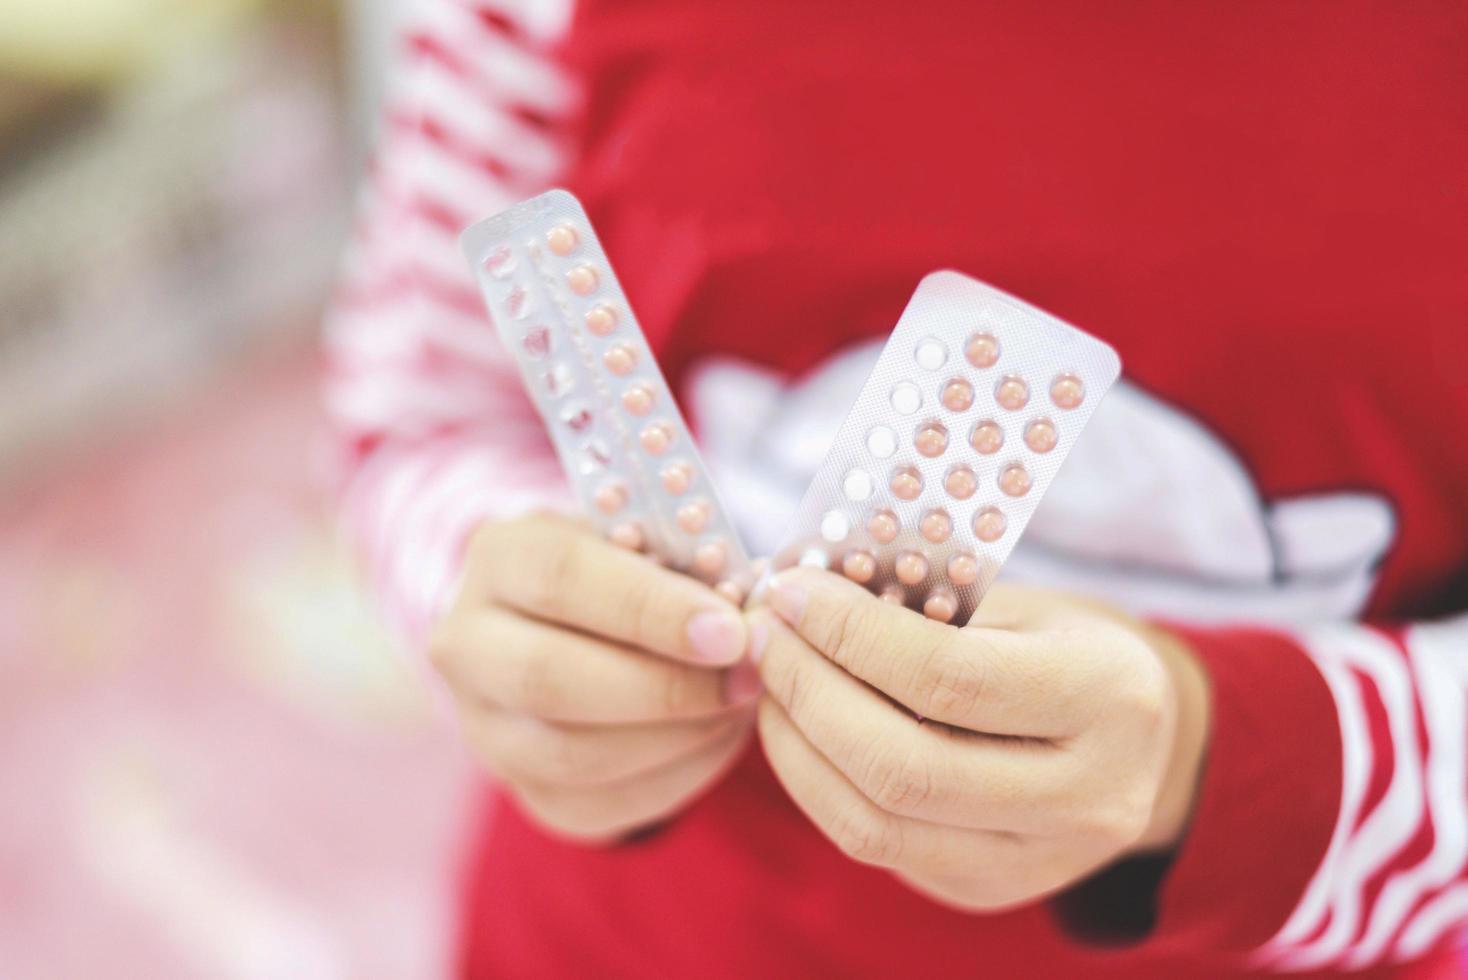 Empfängnisverhütungspillen in der Hand Frau hält - Empfängnisverhütungsmethoden zur Empfängnisverhütung verhindern eine Schwangerschaft foto